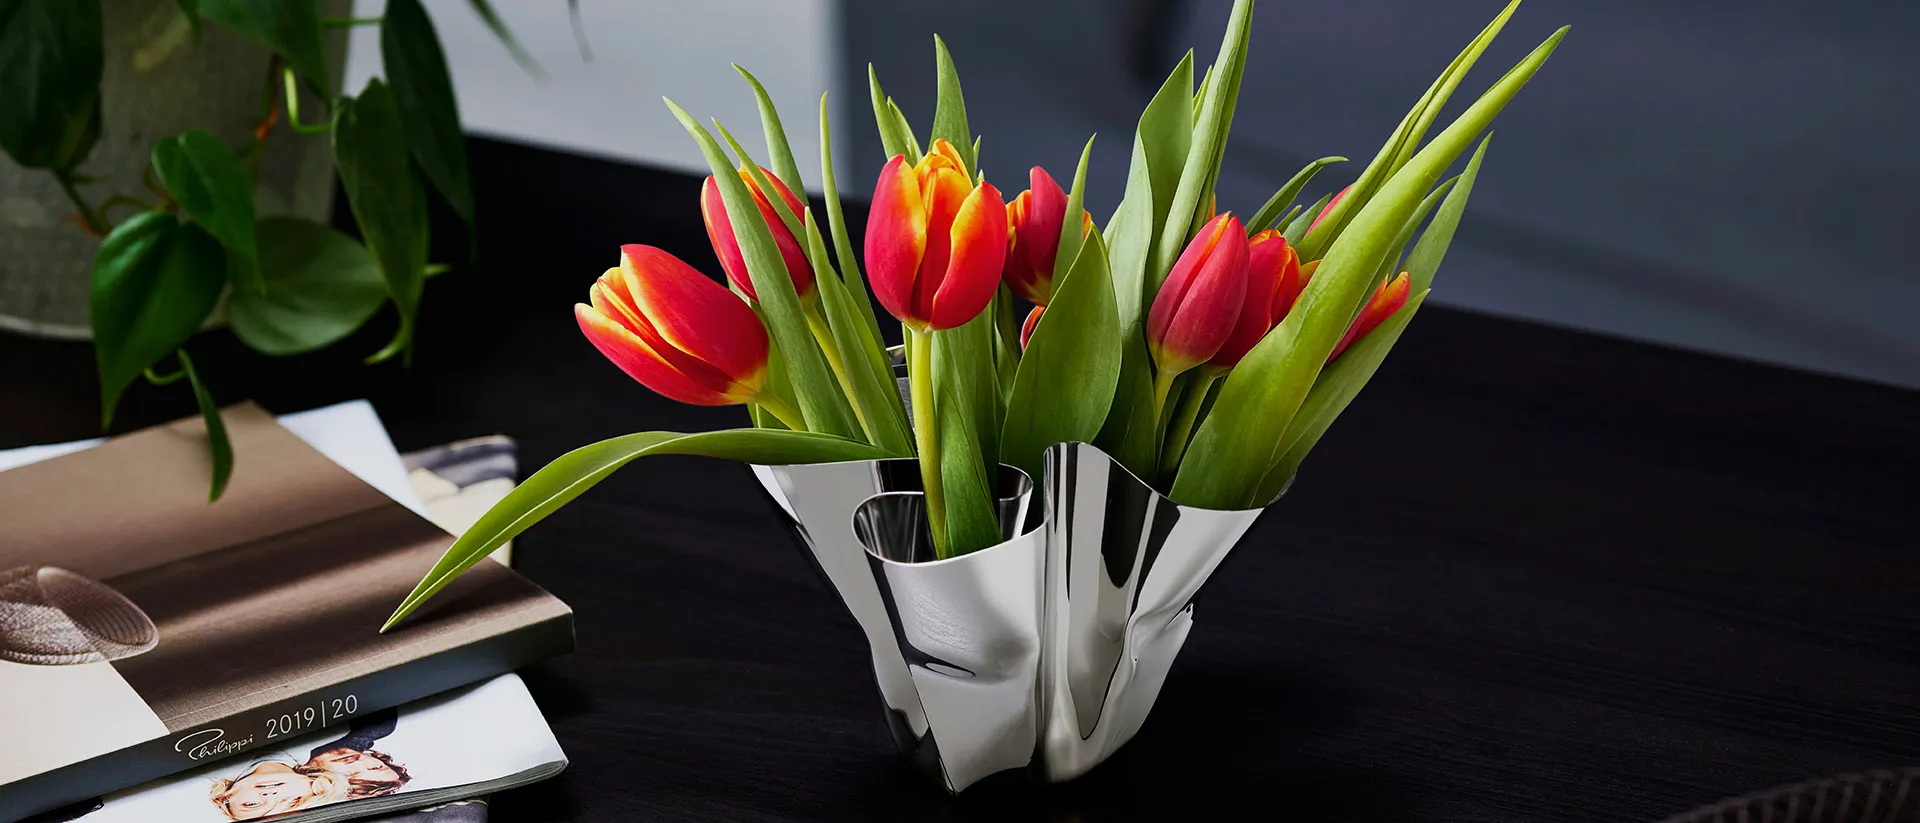 Itt a tavasz: Frissítsük otthonunkat virágokkal!